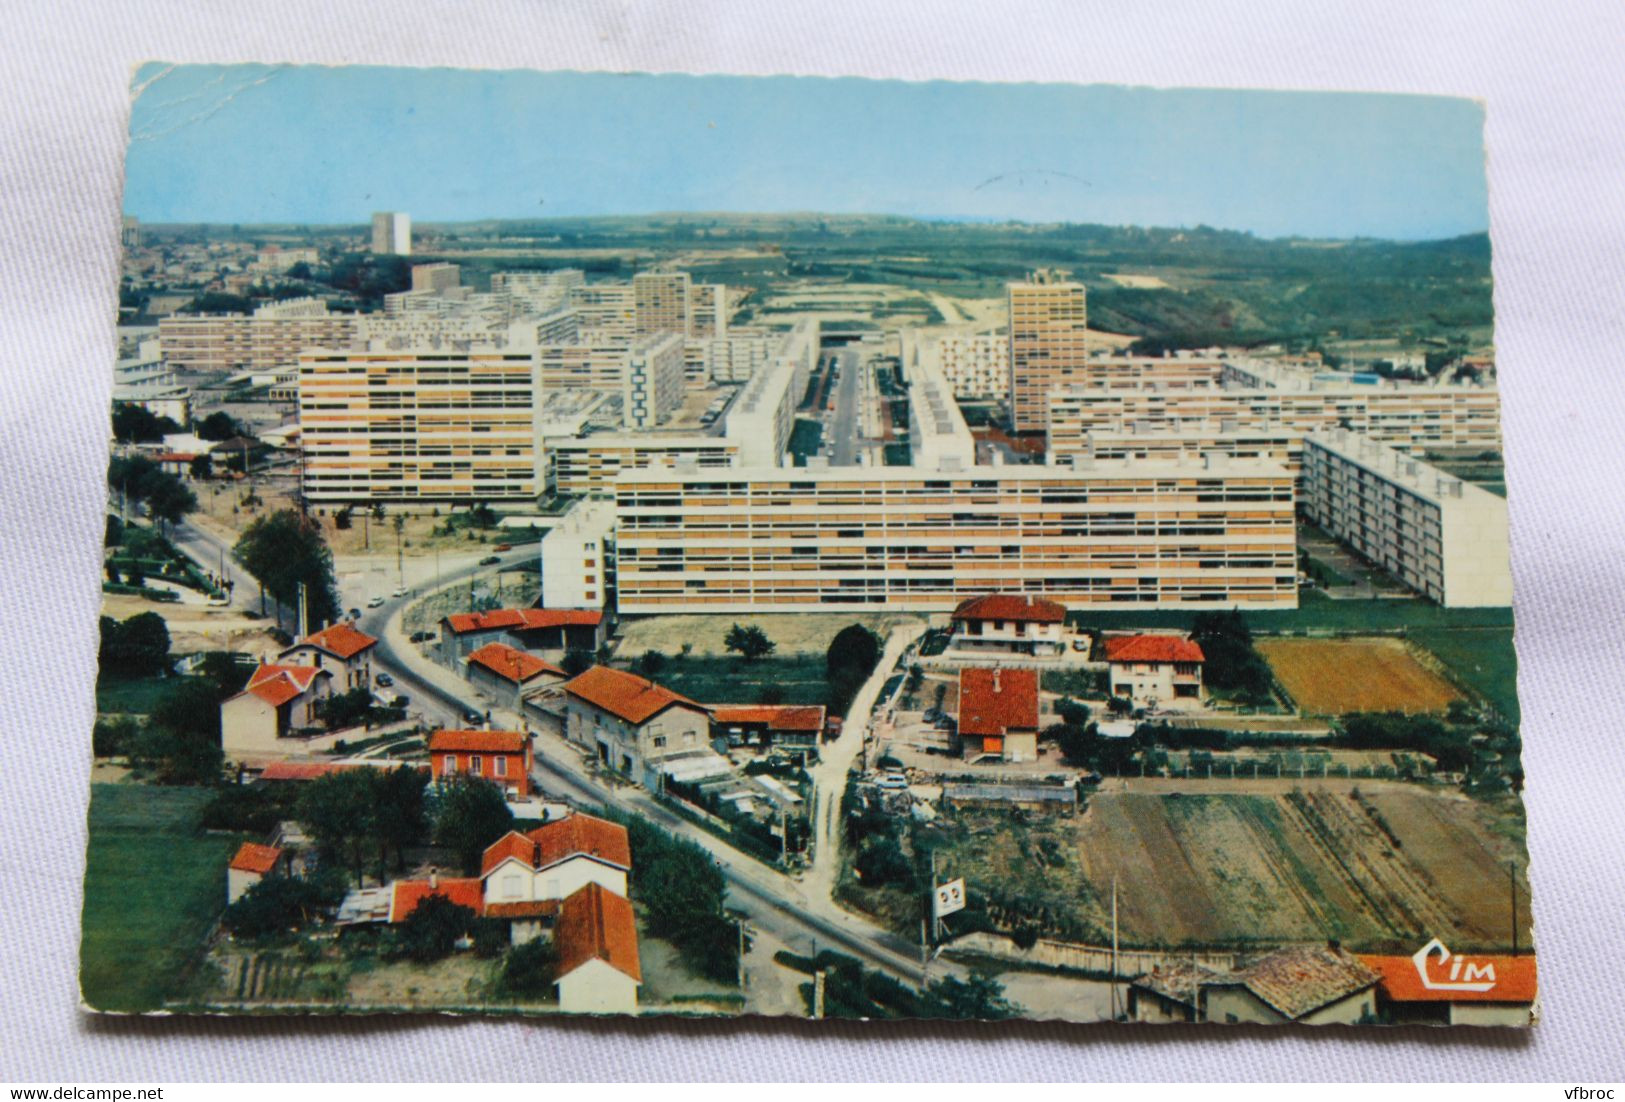 Cpm 1969, Rillieux, Vue Aérienne, Les Allagniers, Rhône 69 - Rillieux La Pape